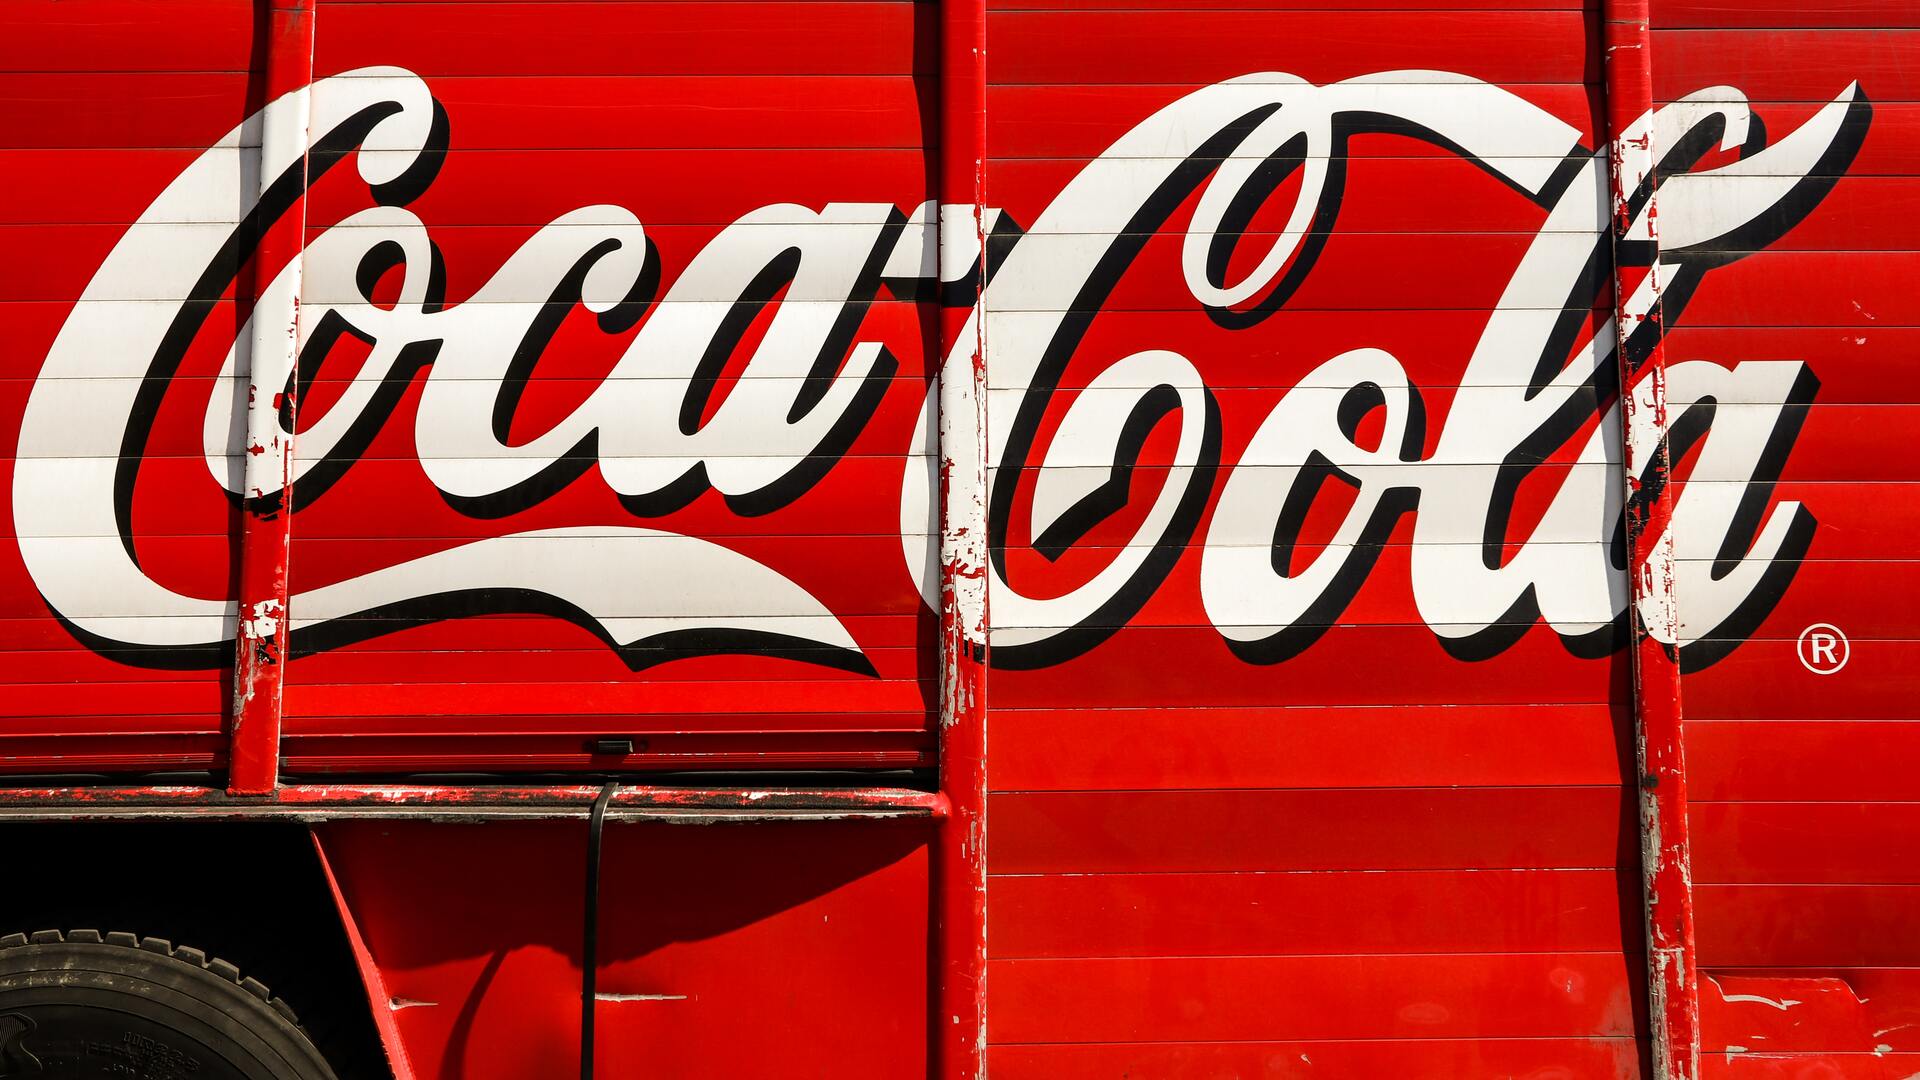 original coca cola logo